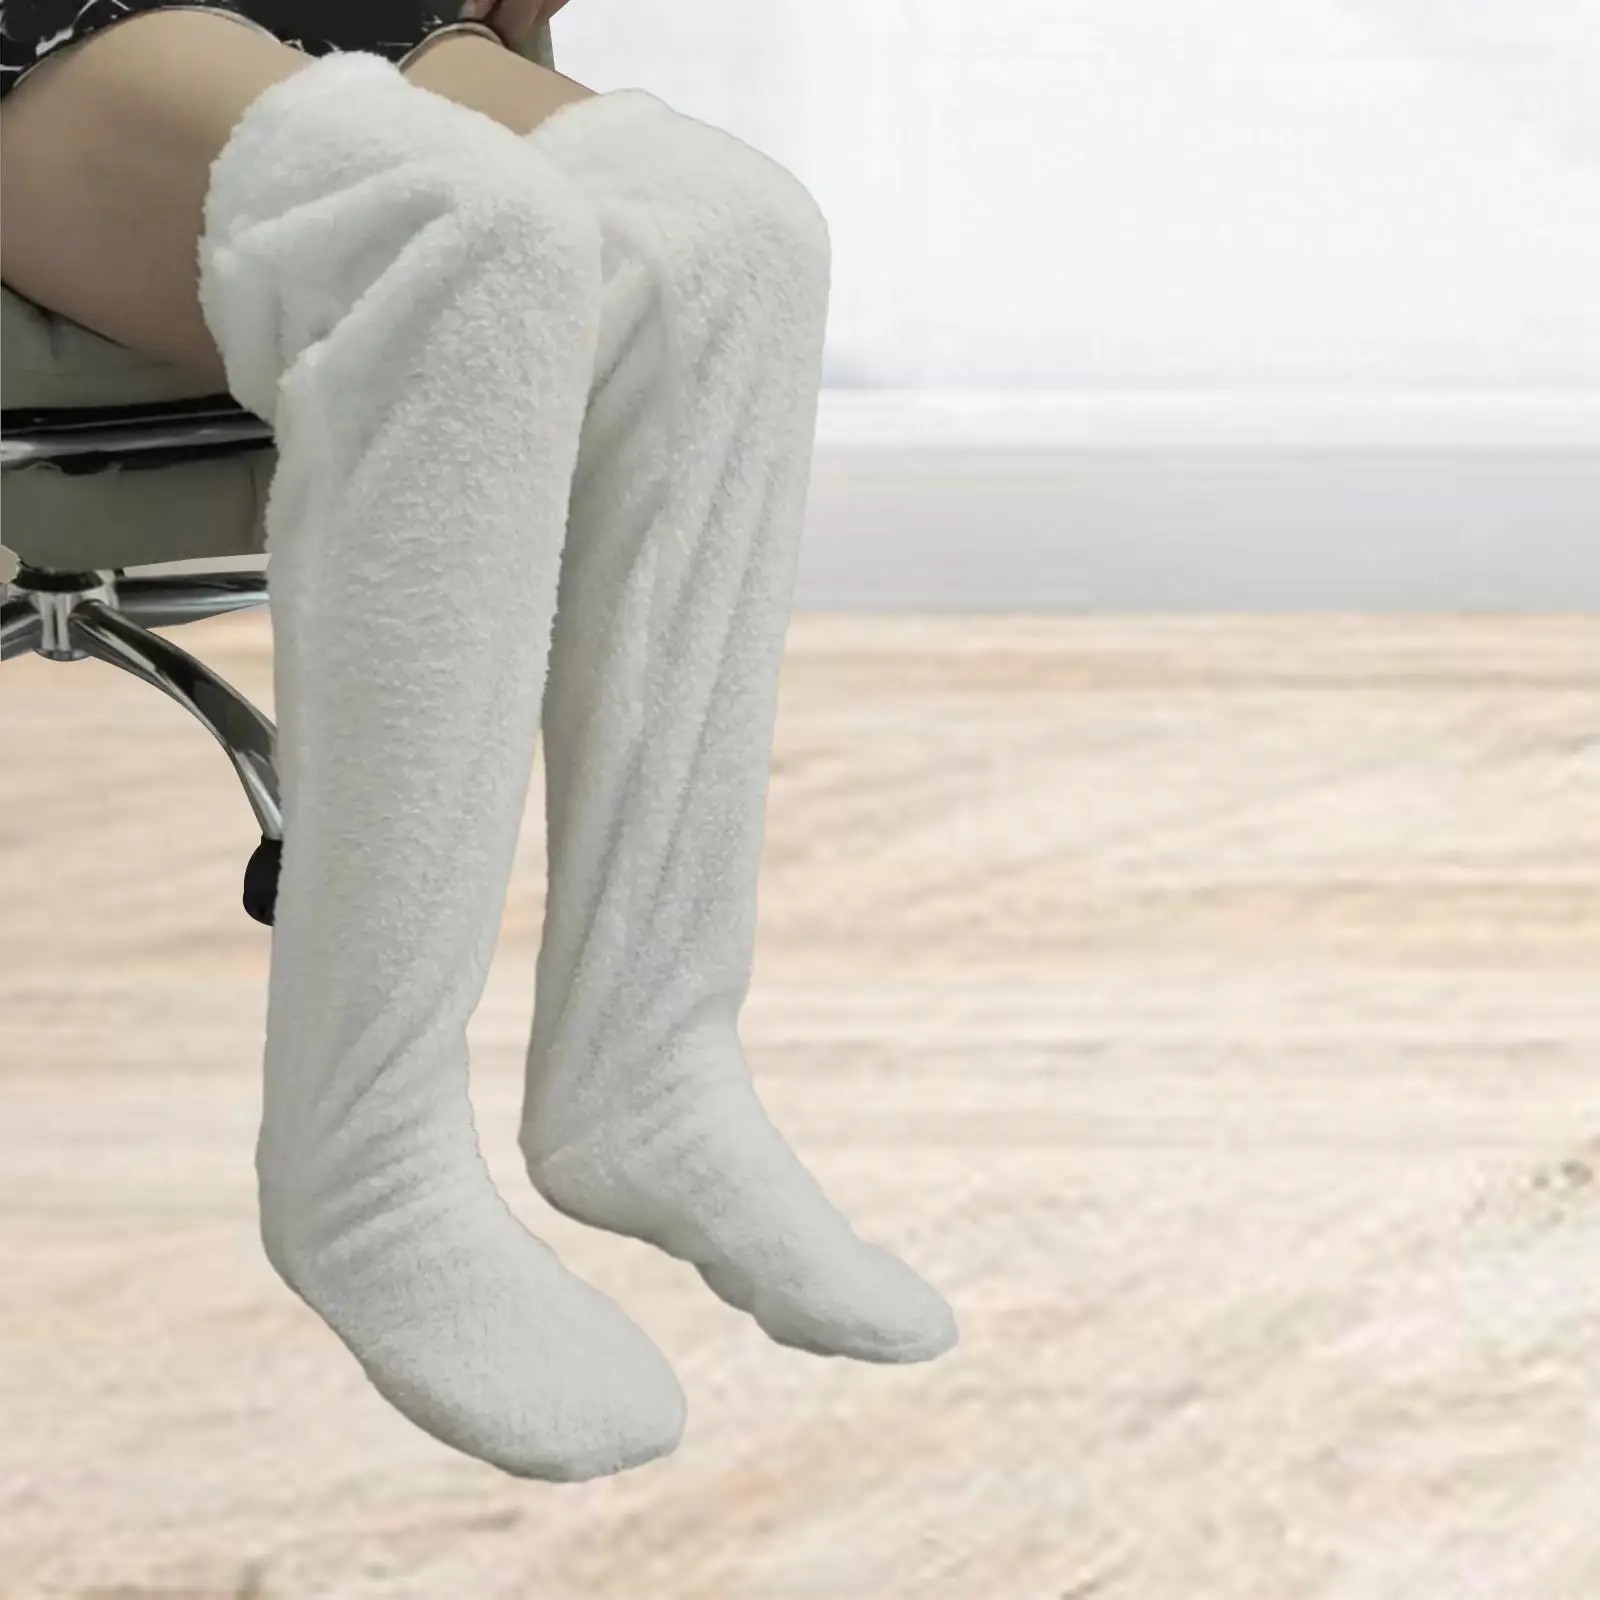 Plush Slipper Stockings Furry Long Leg Warmers for Women Men Over Knee High Fuzzy Socks Winter Home Sleeping Socks